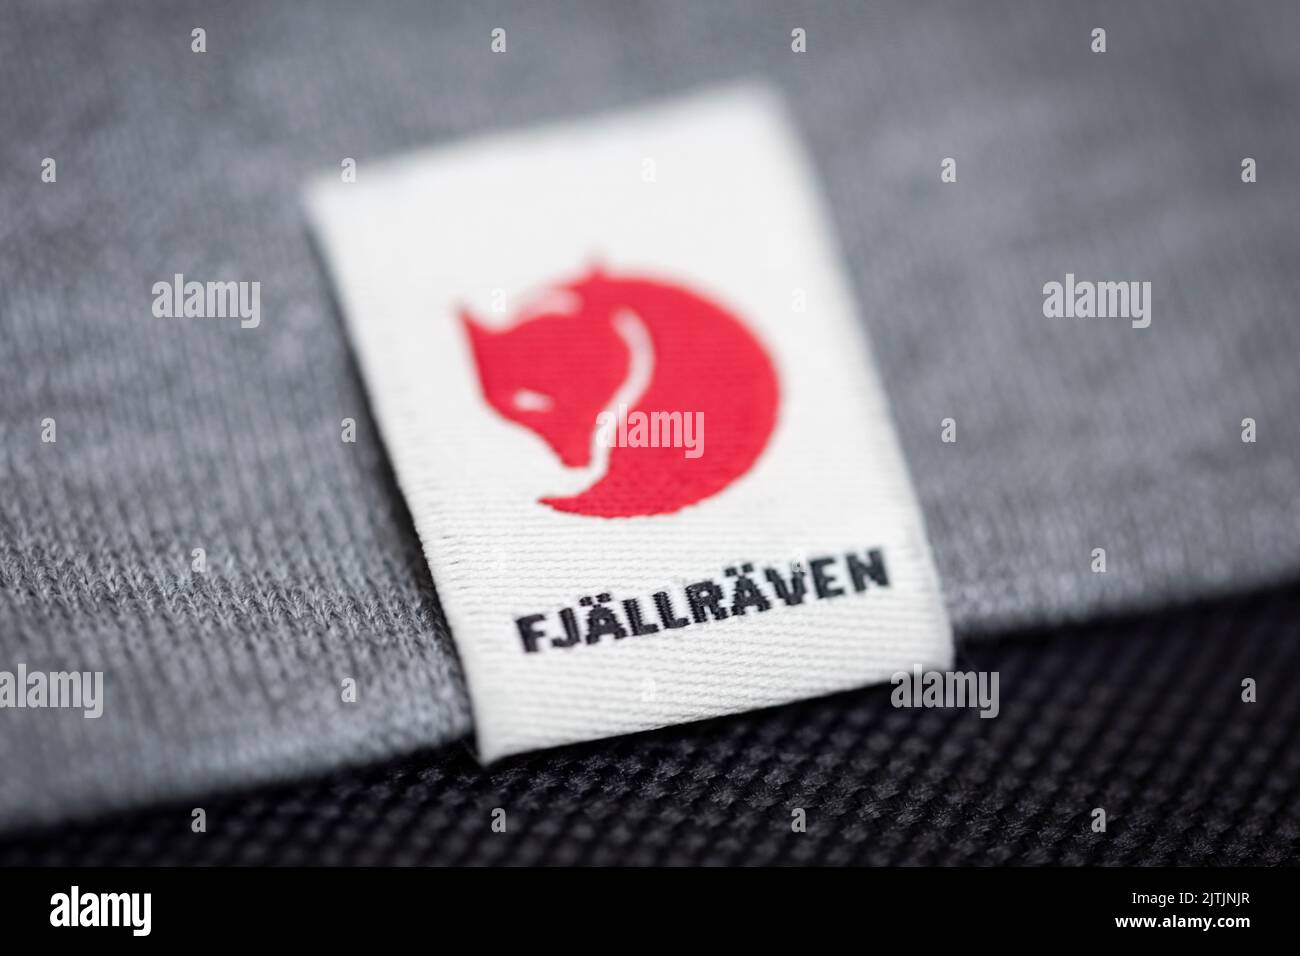 Immagine ravvicinata dell'etichetta Fjallraven come appare su un prodotto. Foto Stock